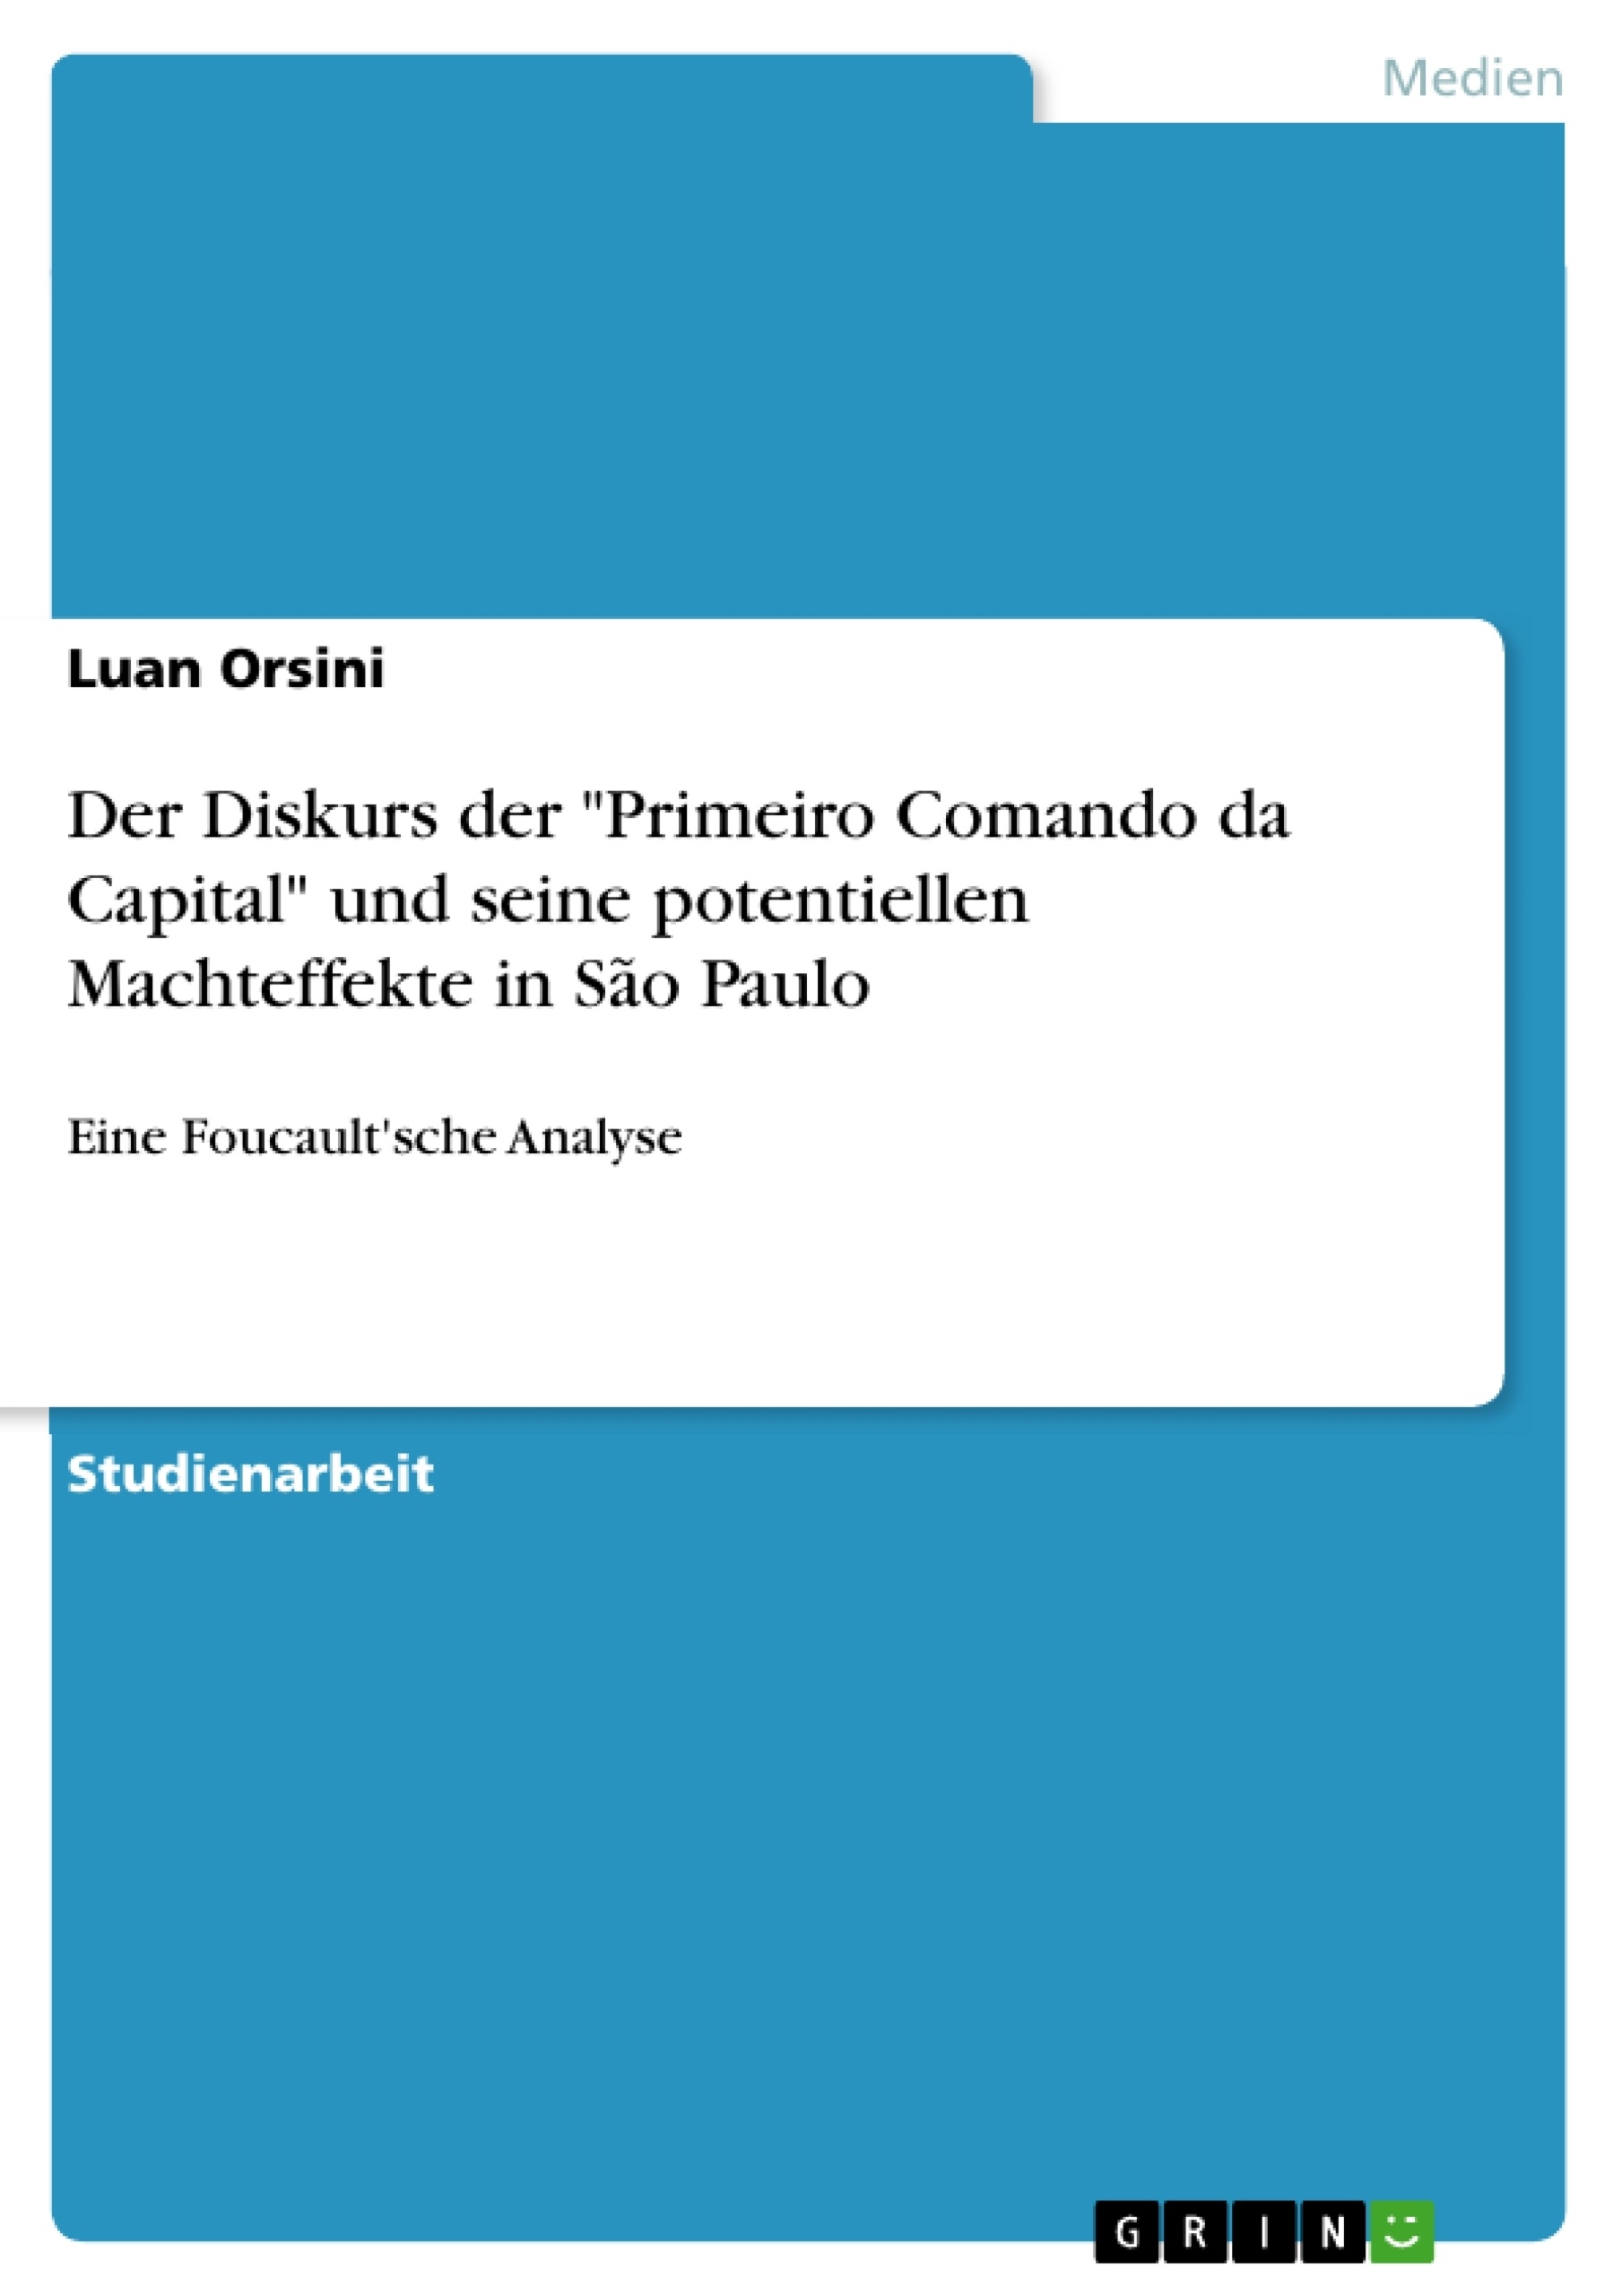 Title: Der Diskurs der "Primeiro Comando da Capital" und seine potentiellen Machteffekte in São Paulo